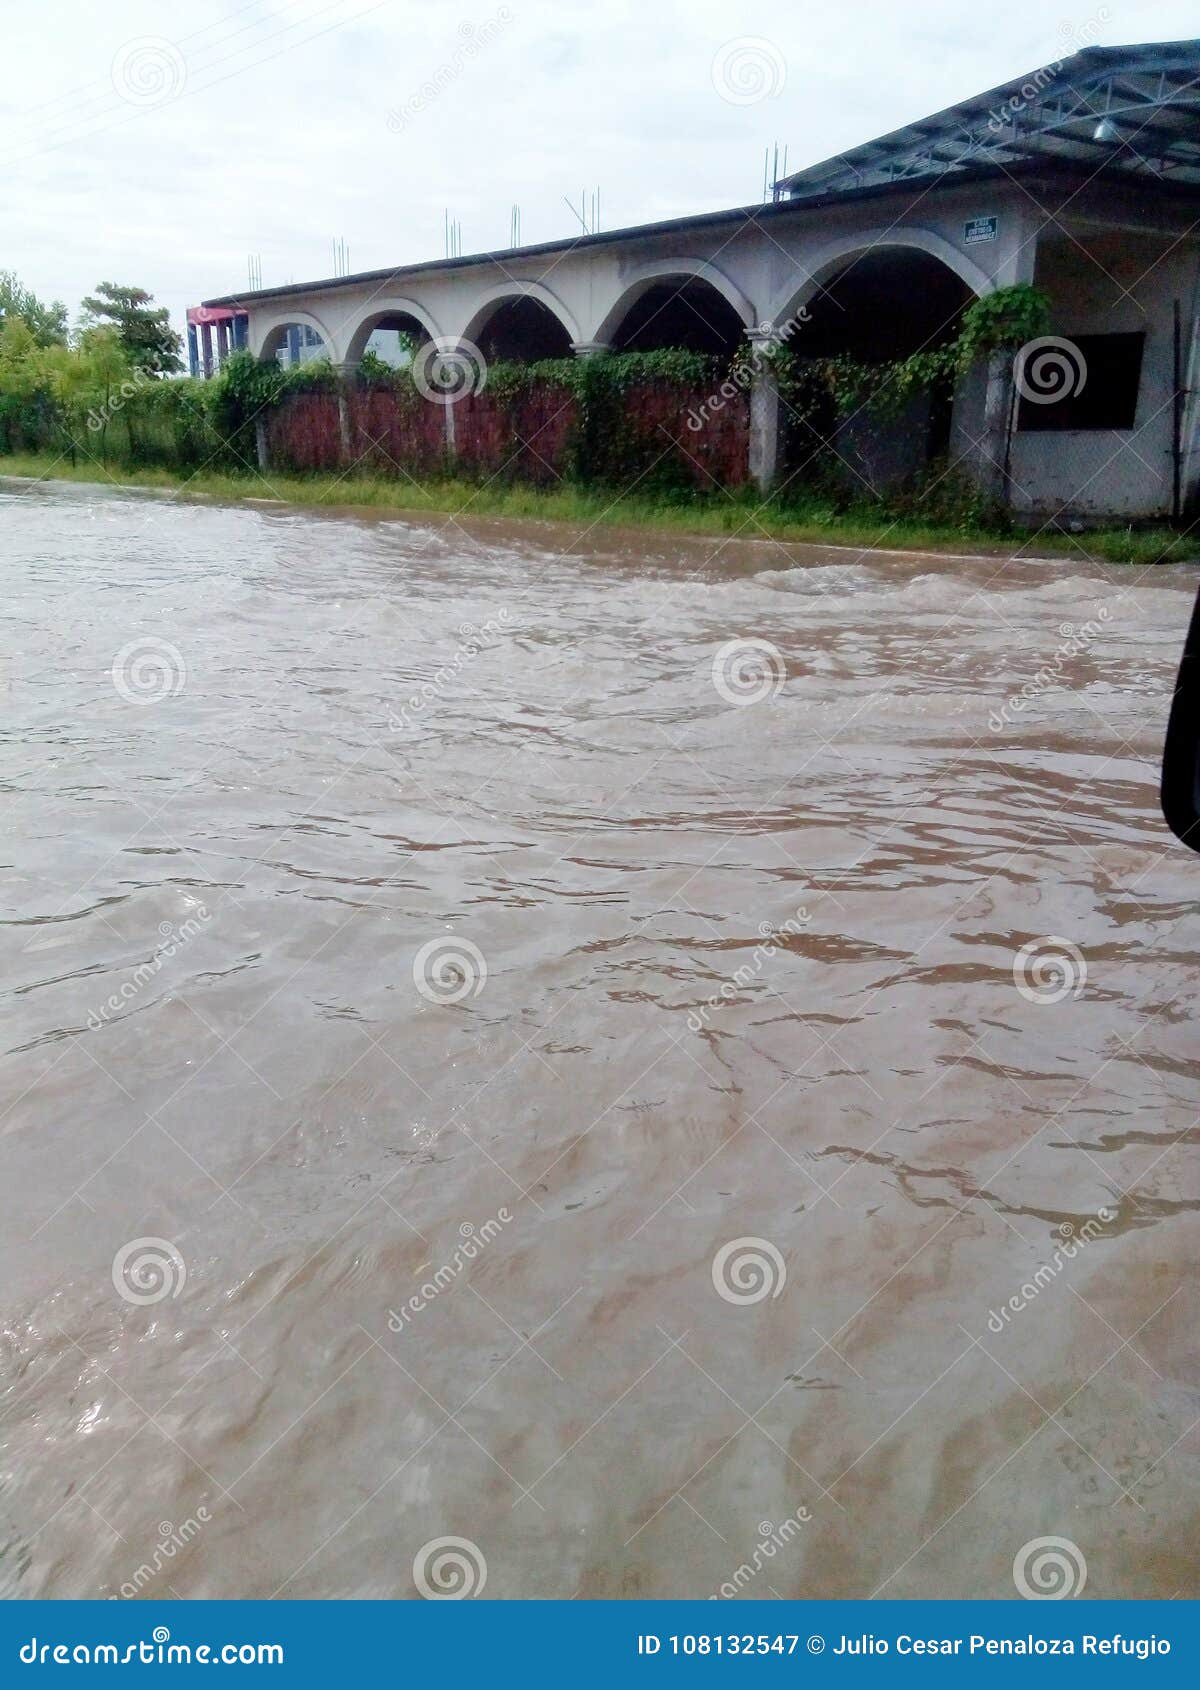 flood after huracane in corral falso, guerrero, mexico